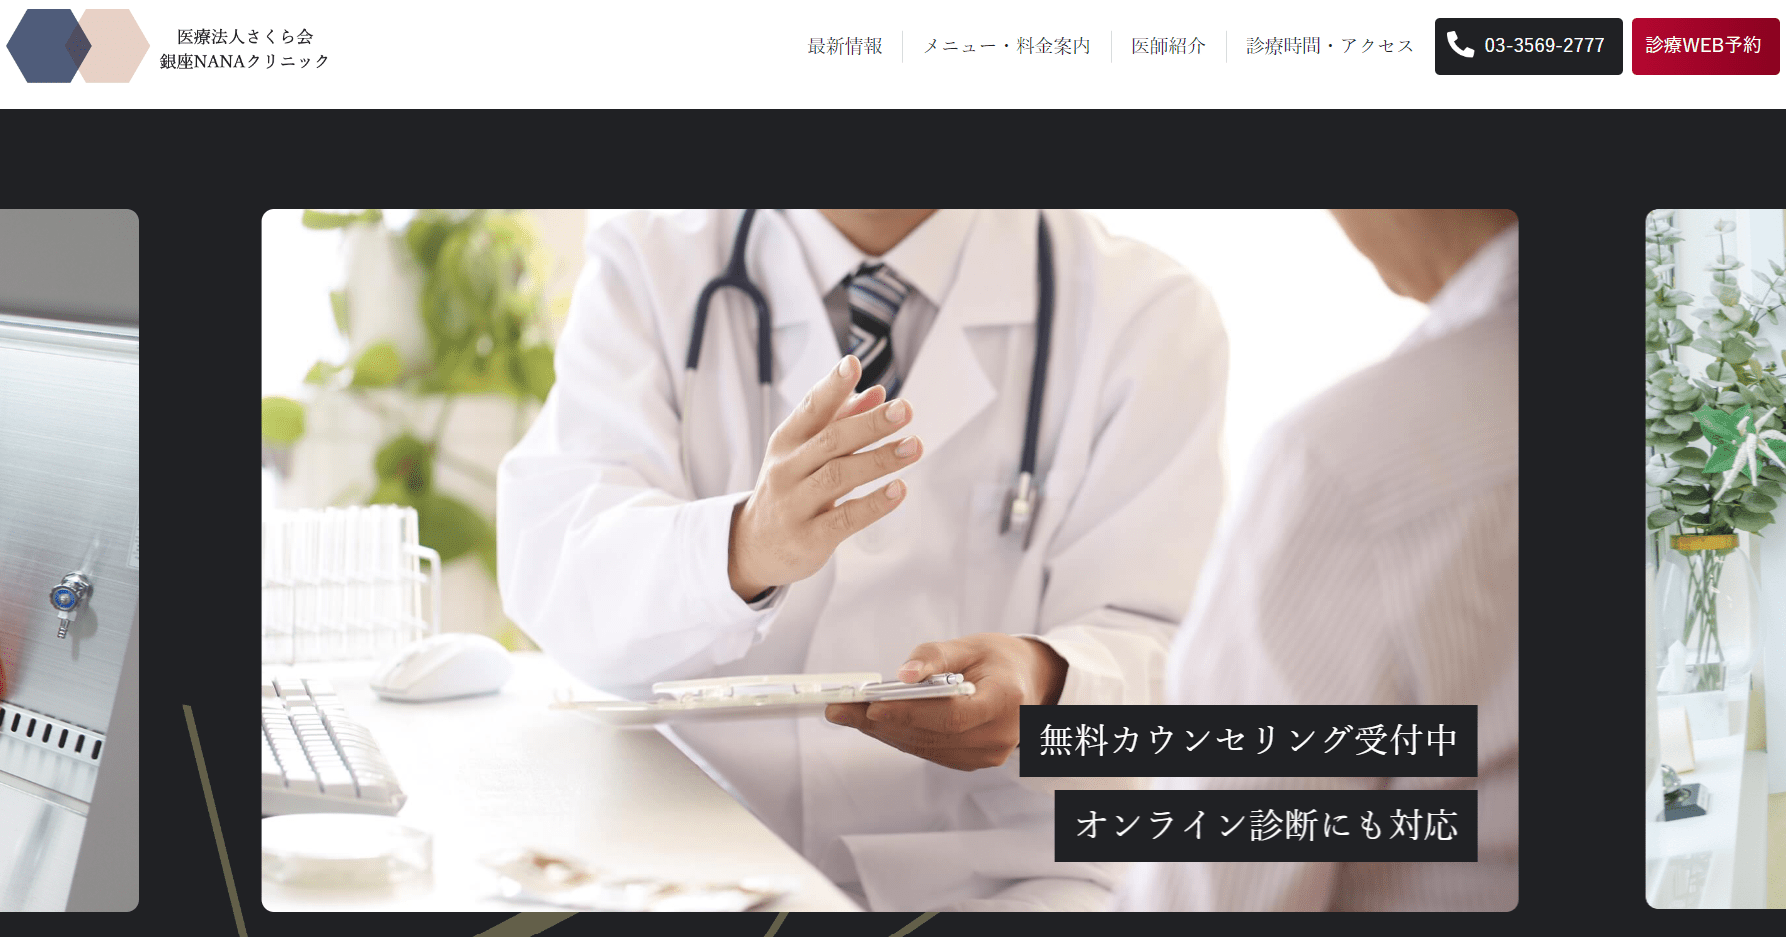 Ginza Nana Clinic